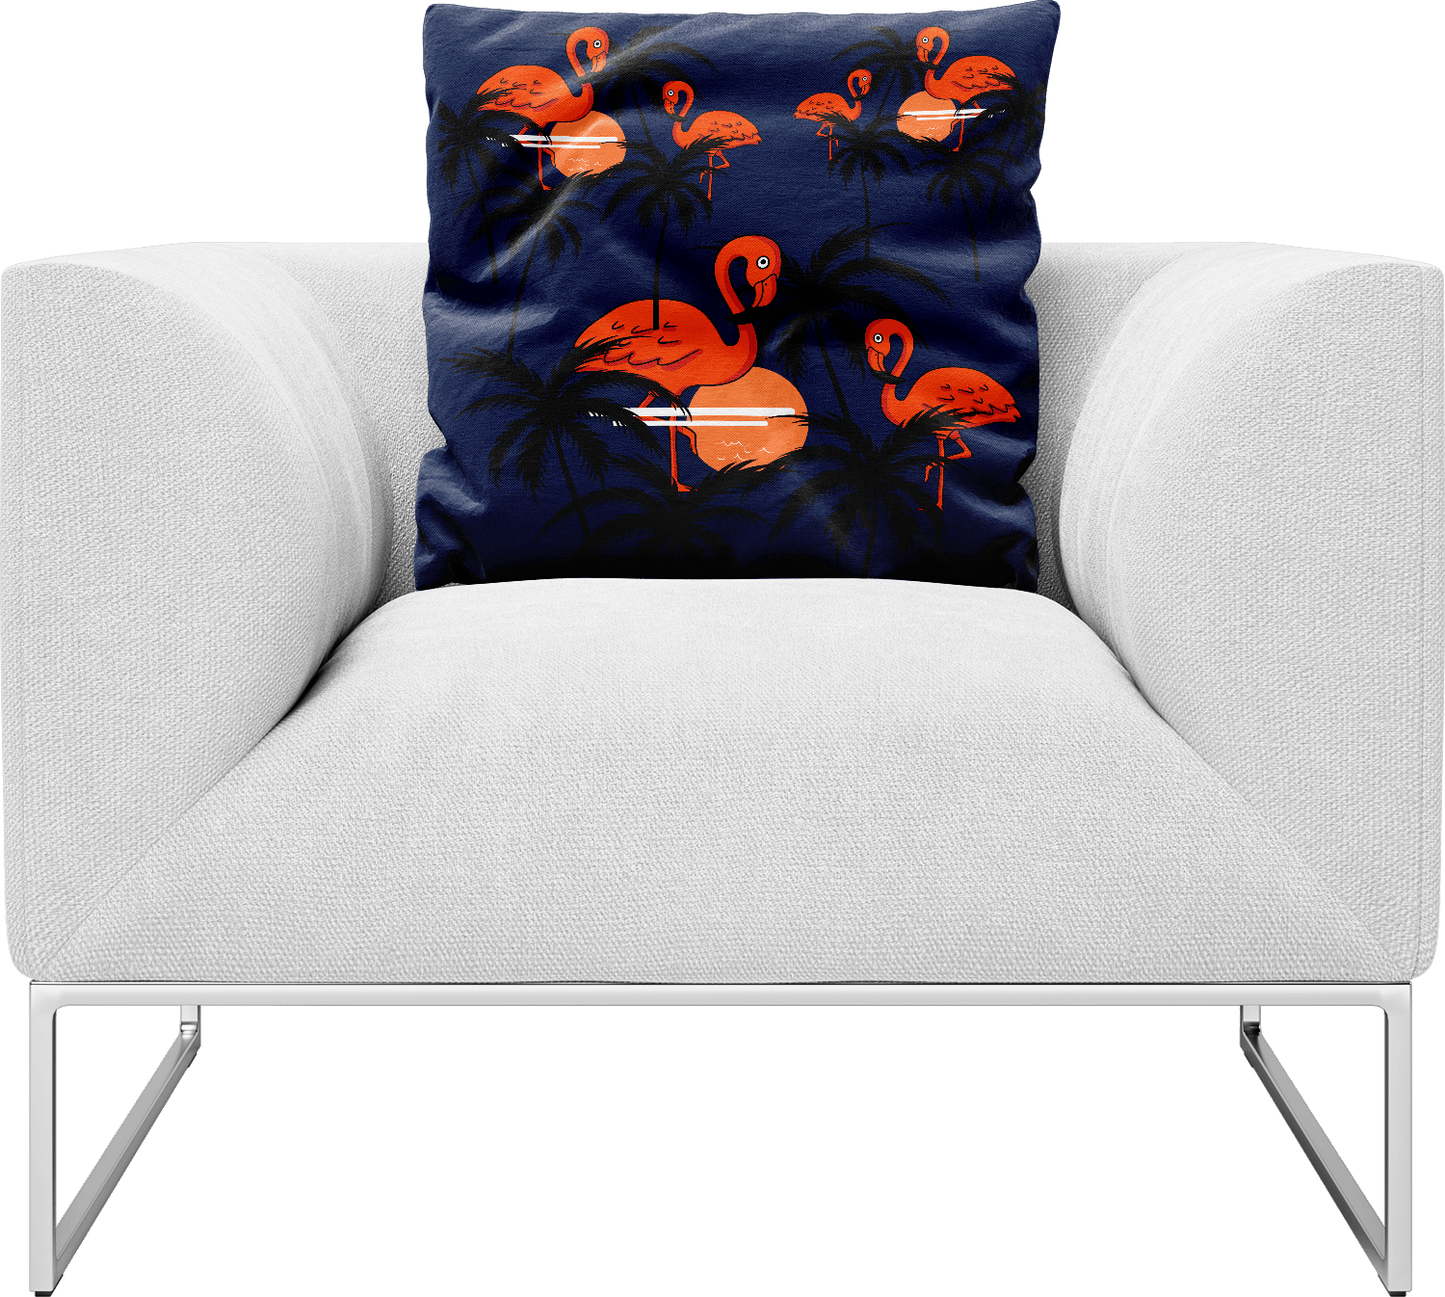 Miami Vice Pillows Cushions - fungear.com.au